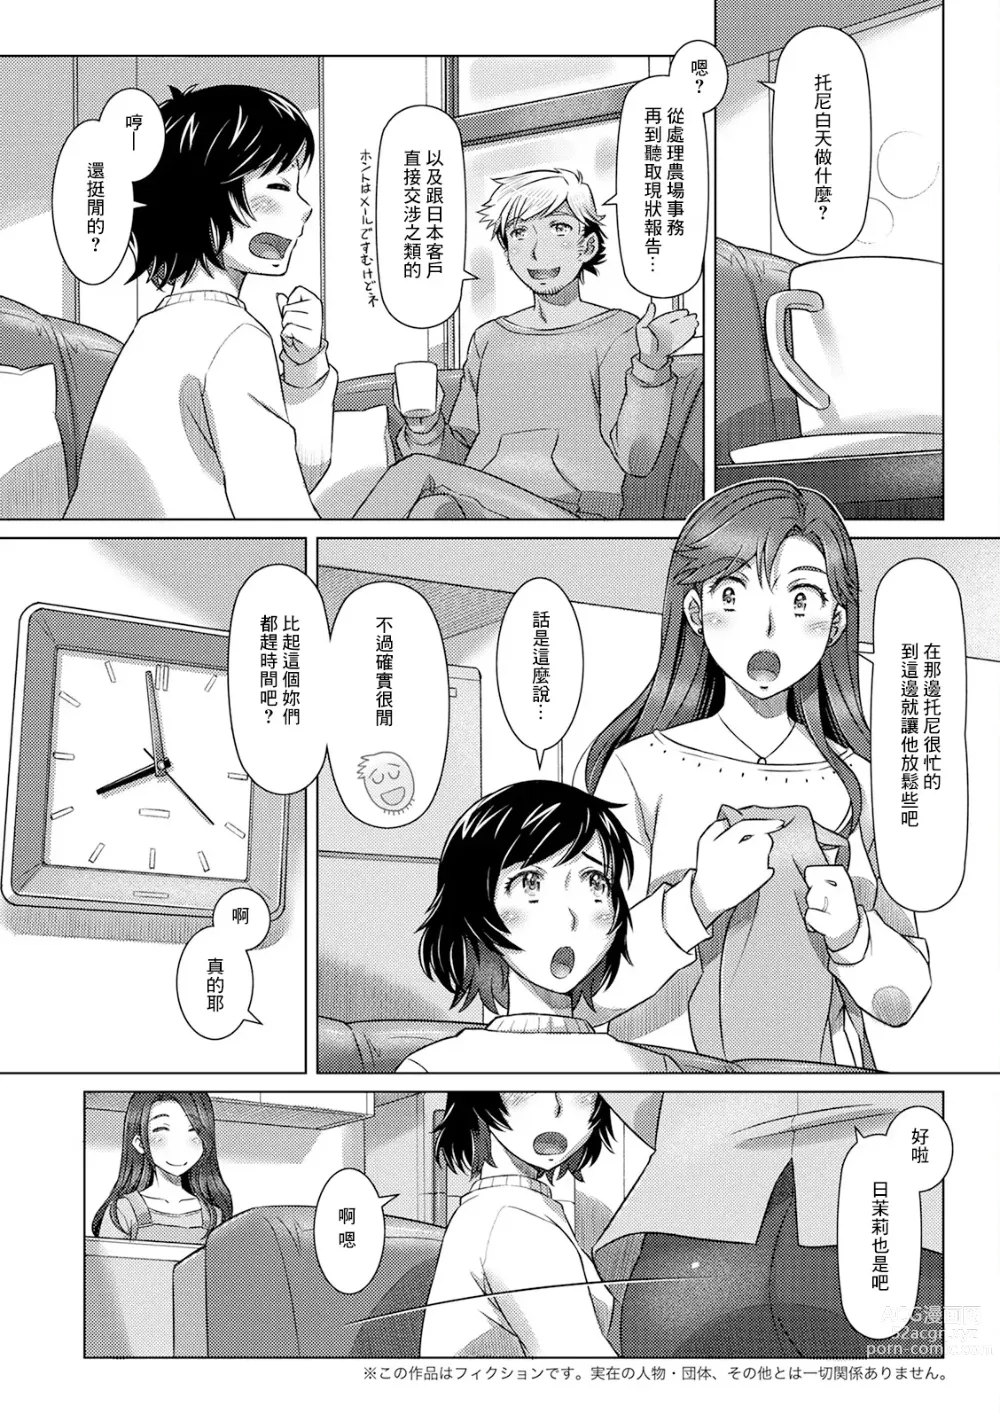 Page 3 of manga 三つの愛の戯れ 中編